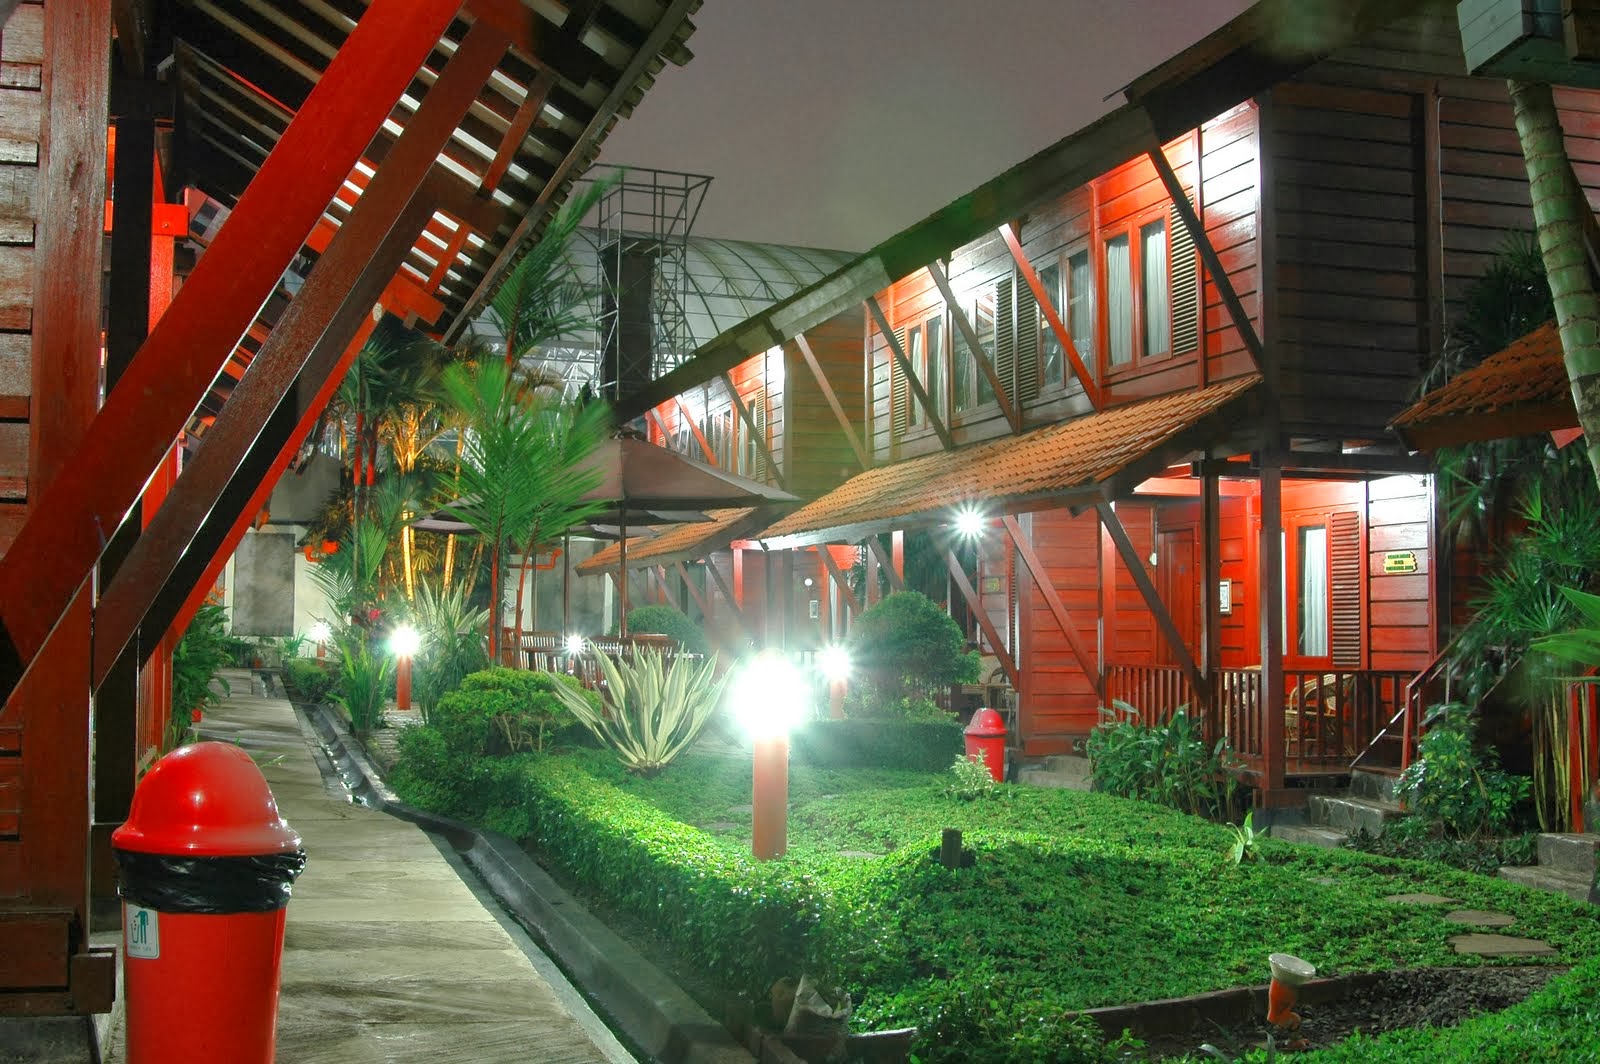 Daftar Hotel Murah Di Bandung Tarif 100ribuan